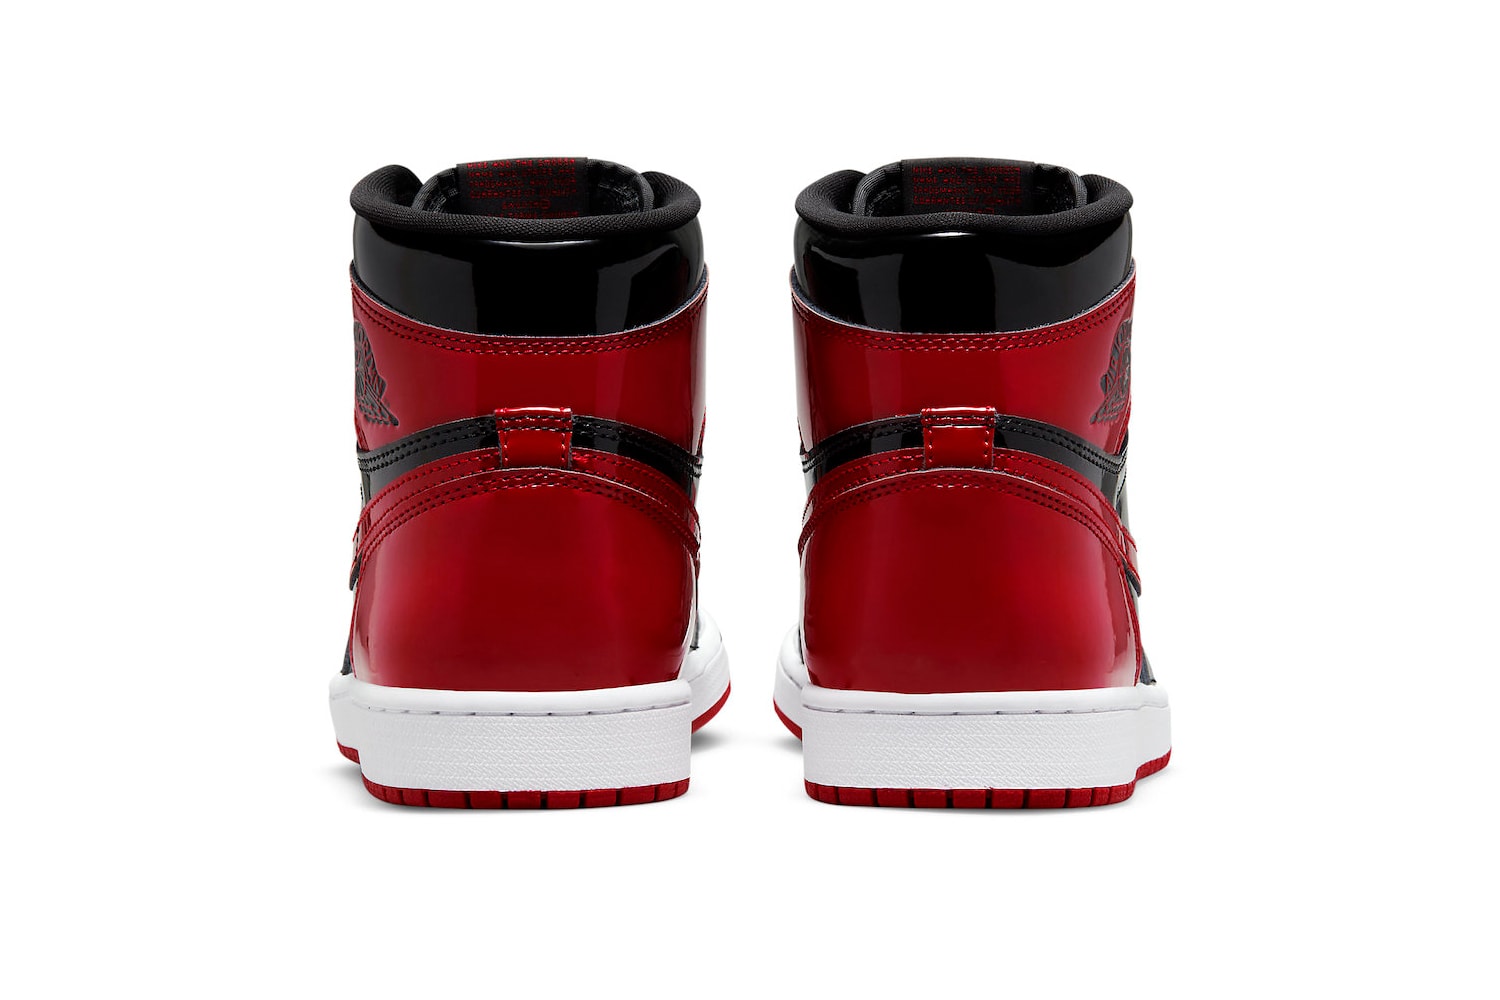 Кроссовки Air Jordan 1 High OG Bred Patent Официальный вид Информация о выпуске 555088-063 Дата покупки Цена Черный Белый Университетский Красный